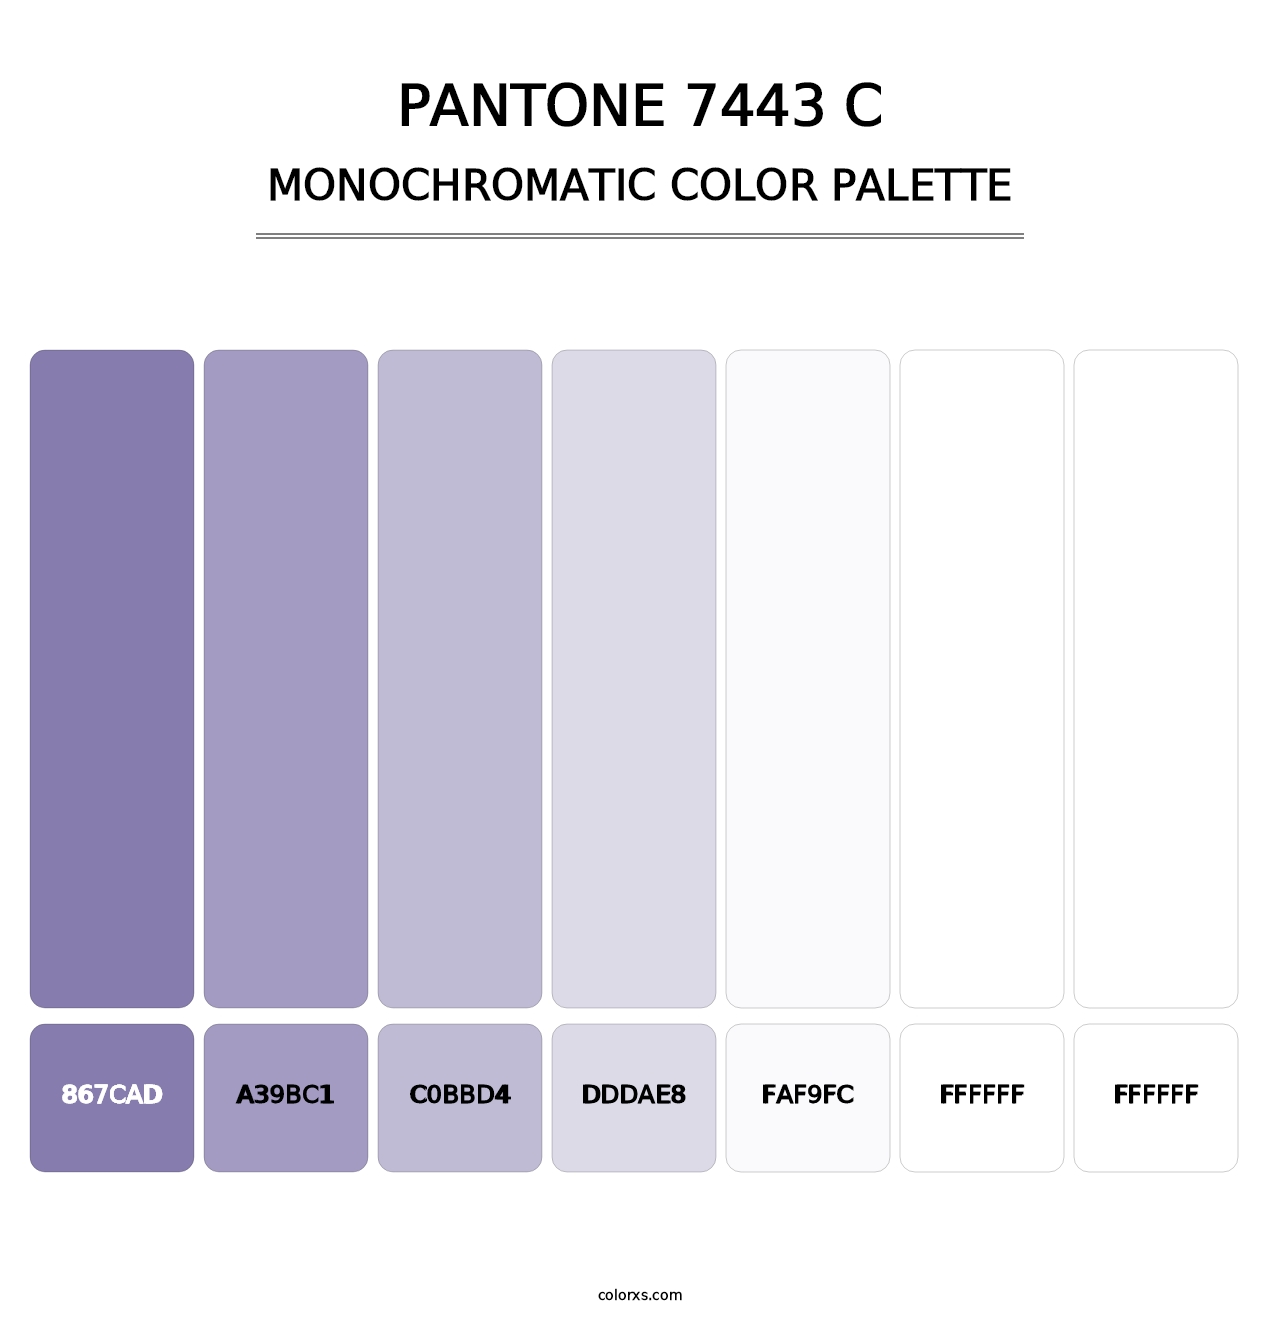 PANTONE 7443 C - Monochromatic Color Palette